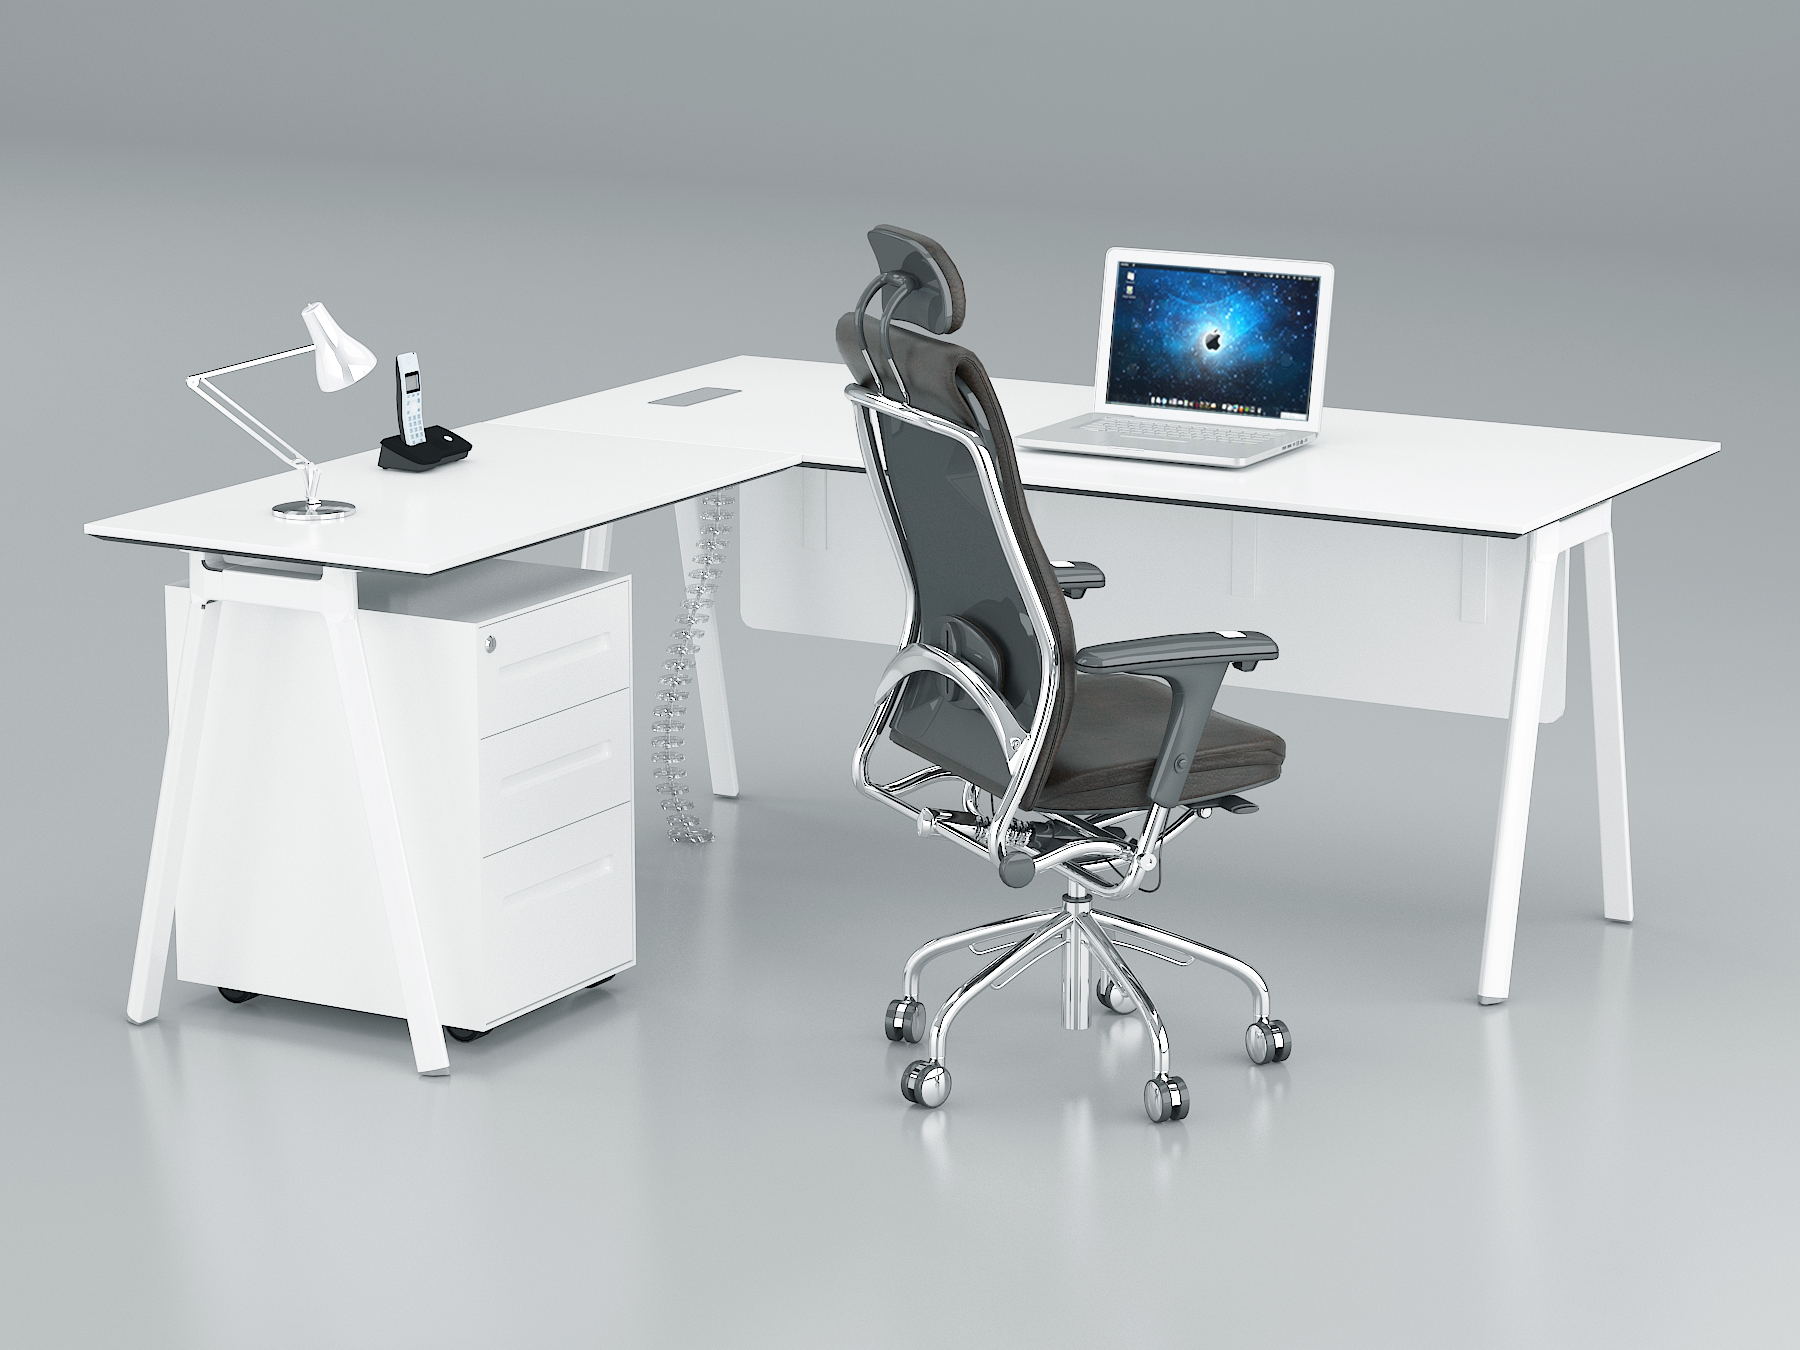 Fad L Shape Executive Table. 3 Drawer Mobile Pedestal, With Metal Leg (L180 x W80 xH75)